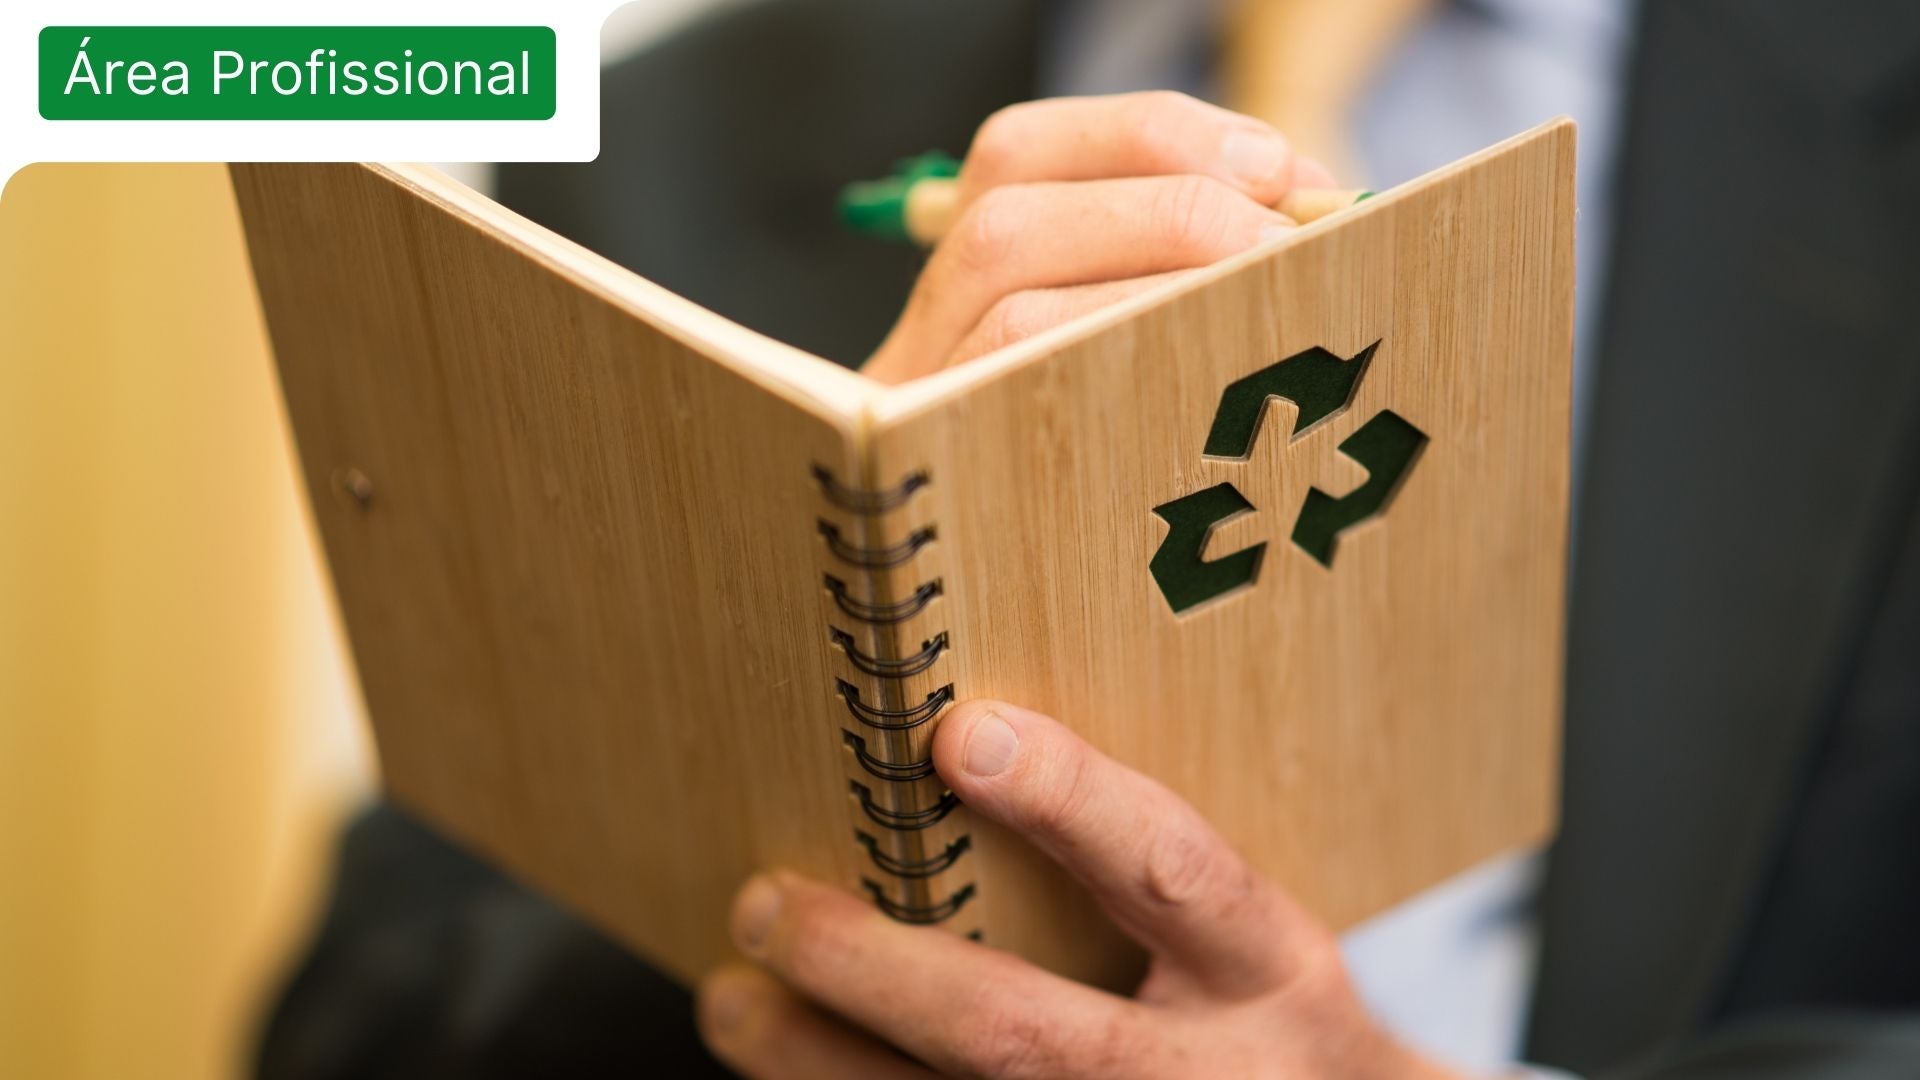 Caderno com o símbolo da economia circular para retratar o tema do desenvolvimento sustentável